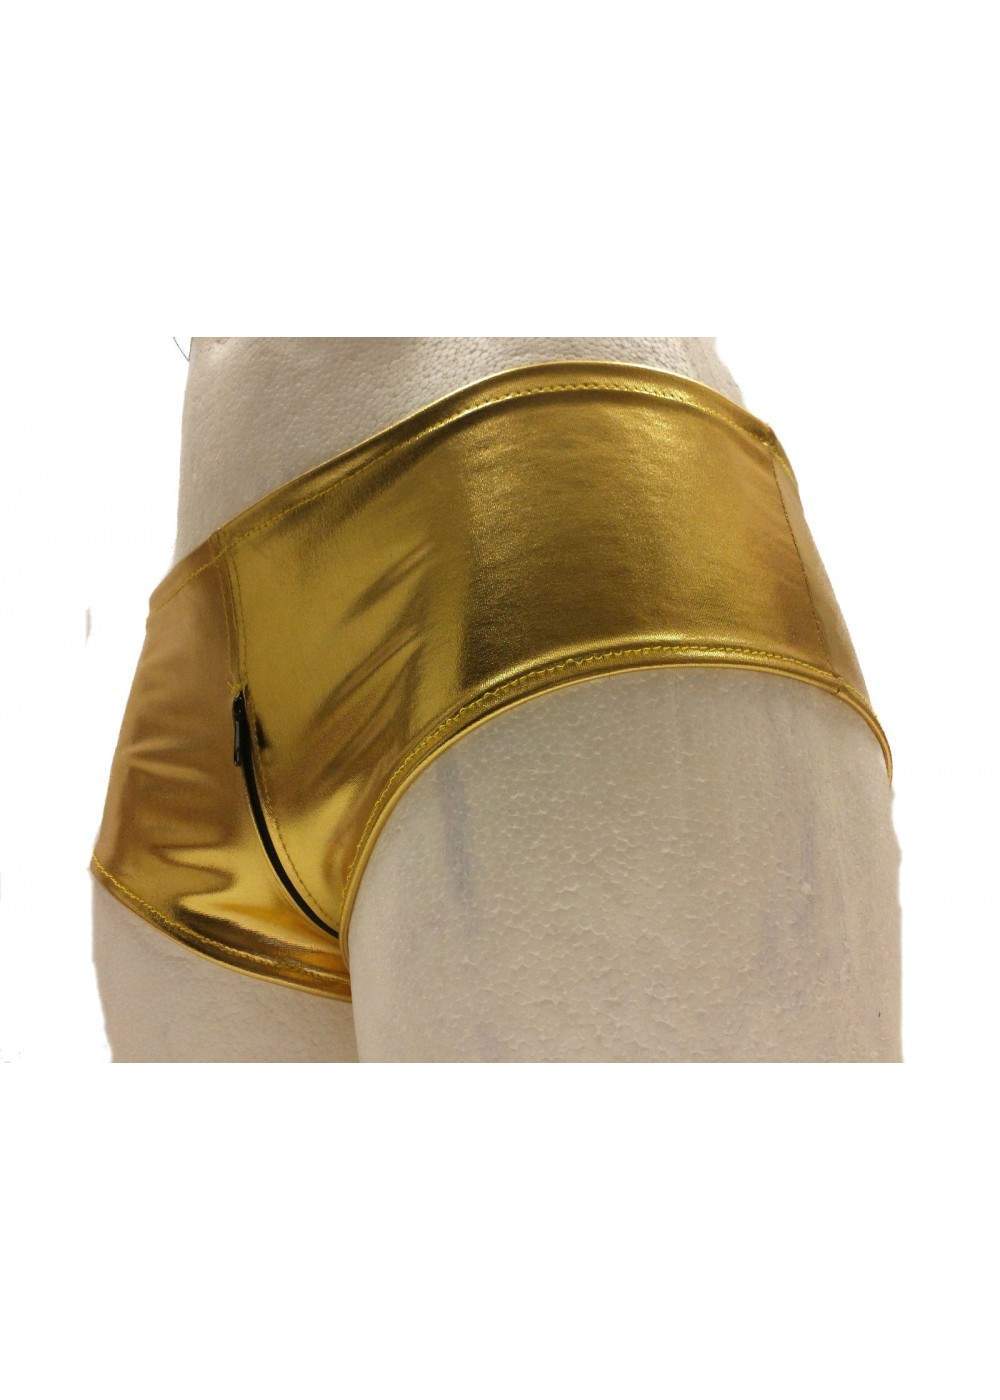 Ouvert Hotpants Gold mit Reißverschluss Größen 32 - 52 ab 15,00 € - 